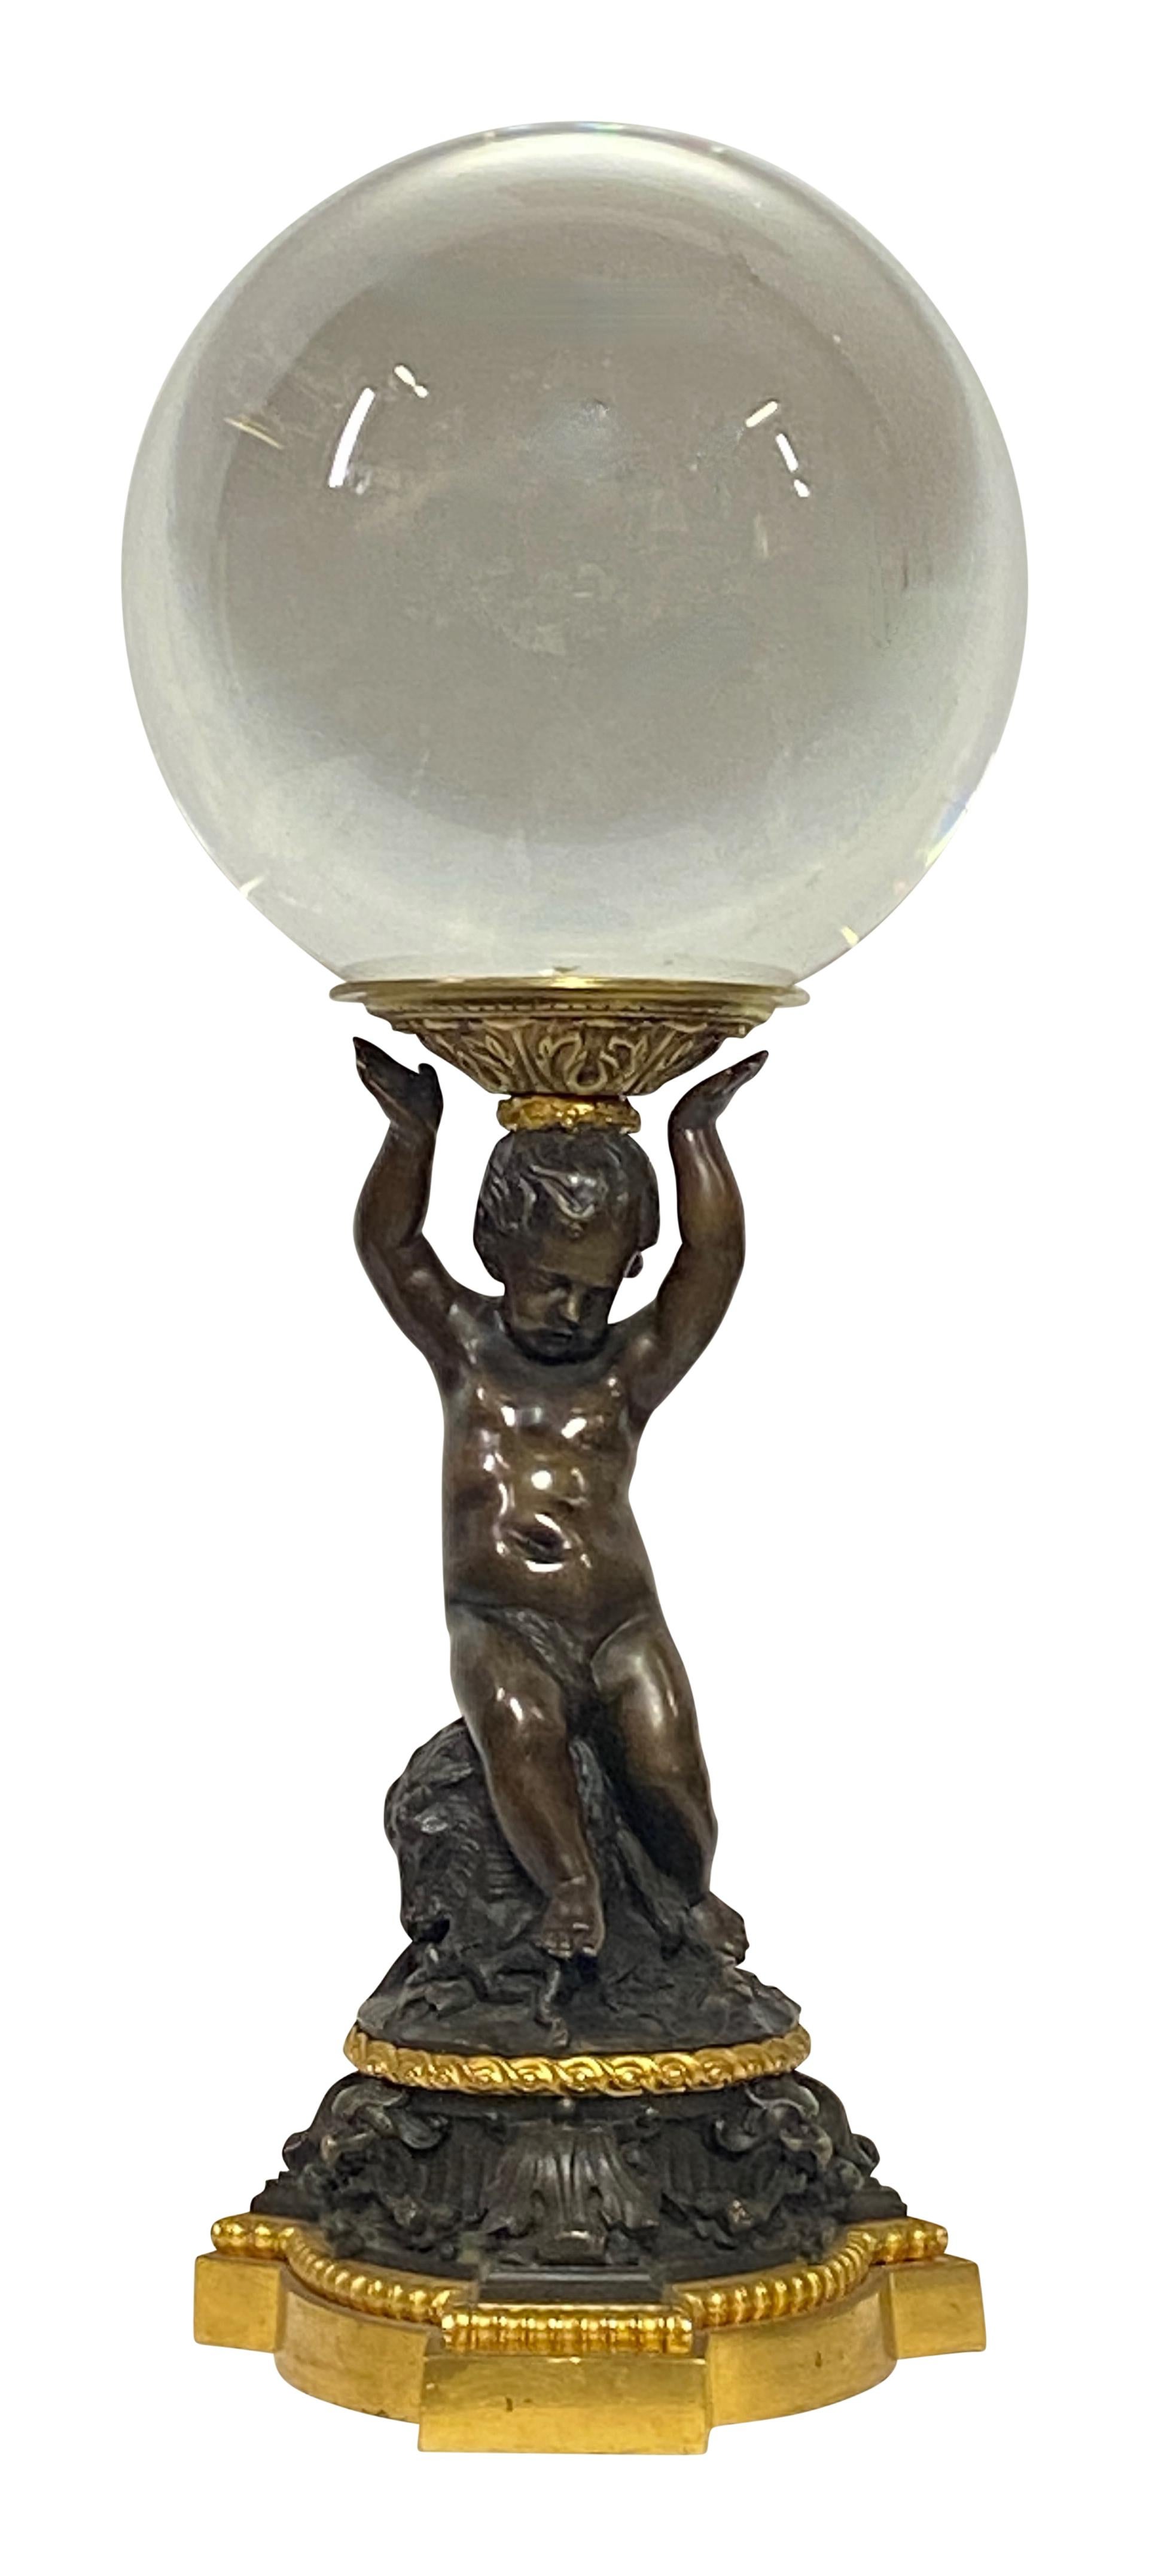 Exceptionnelle base de chérubin en bronze patiné et doré de style Renaissance, réalisée entre le début et le milieu du XIXe siècle. Le personnage tient une boule de cristal de 10 pouces de diamètre.  
La qualité et les détails sont magnifiques.